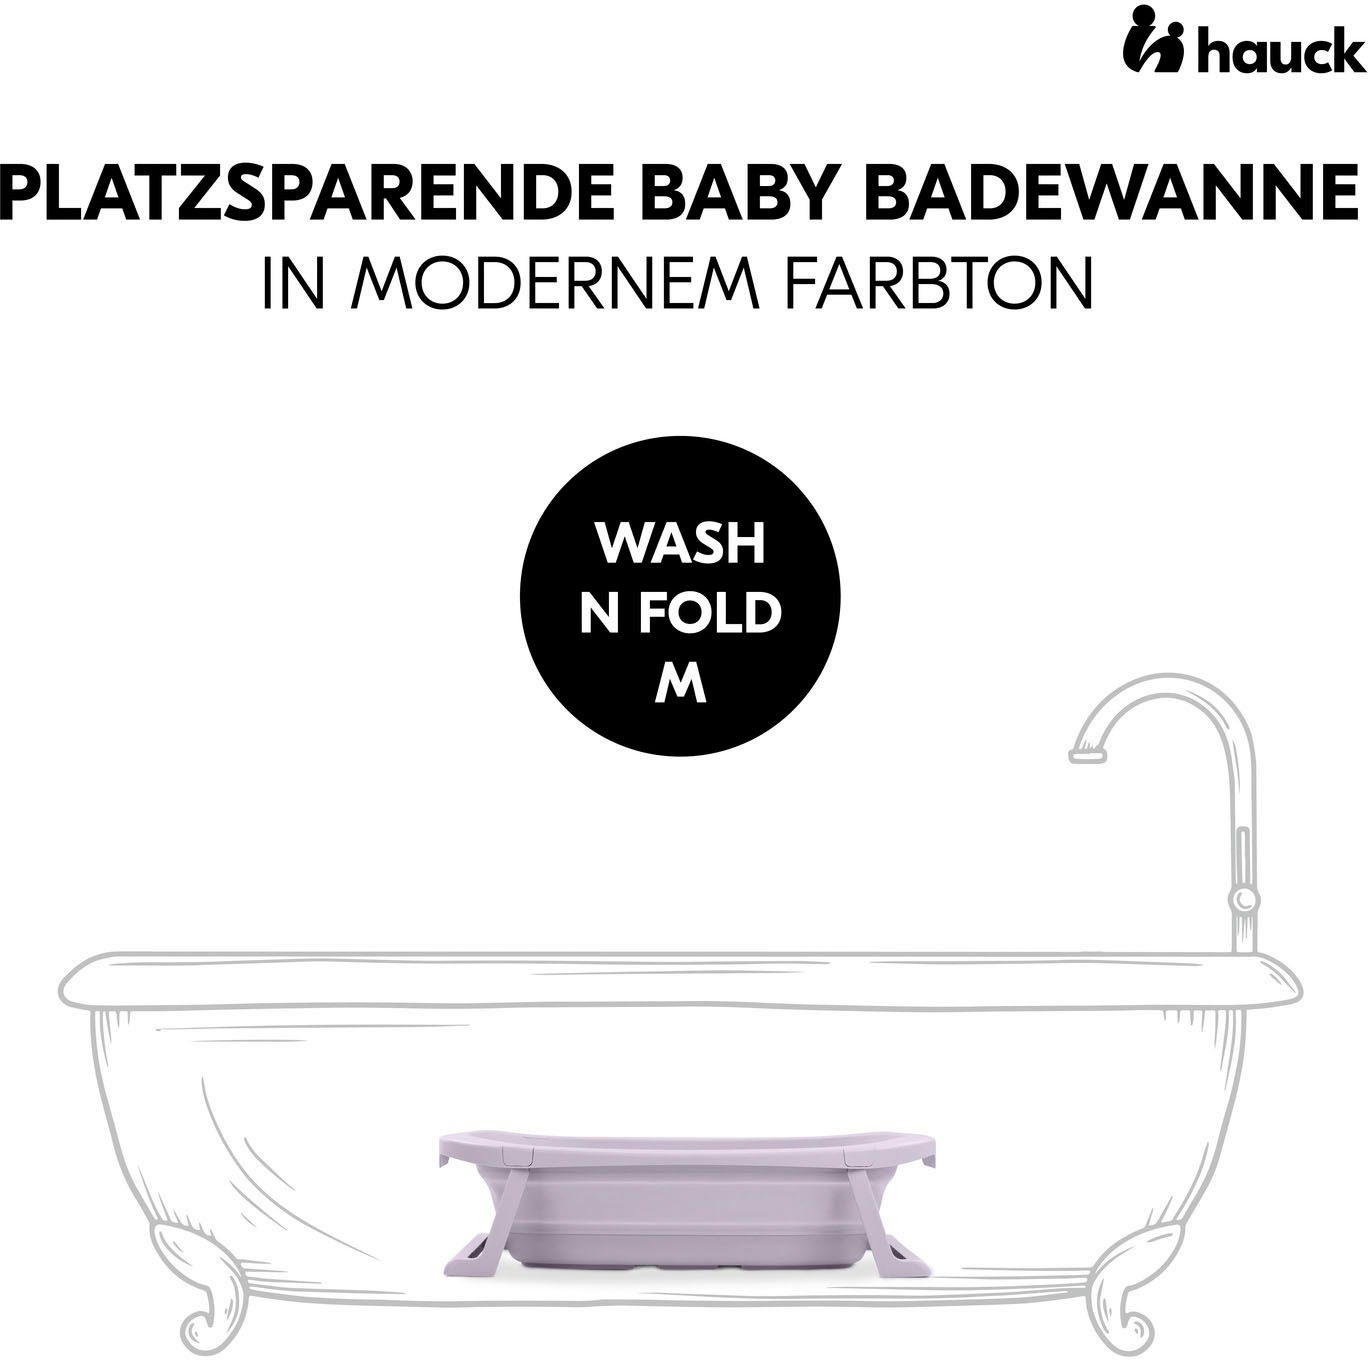 Babybadewanne Lavender, mit Hauck Ablaufstopfen Wassertemperaturmessung N Fold am Faltbadewanne Wash M,